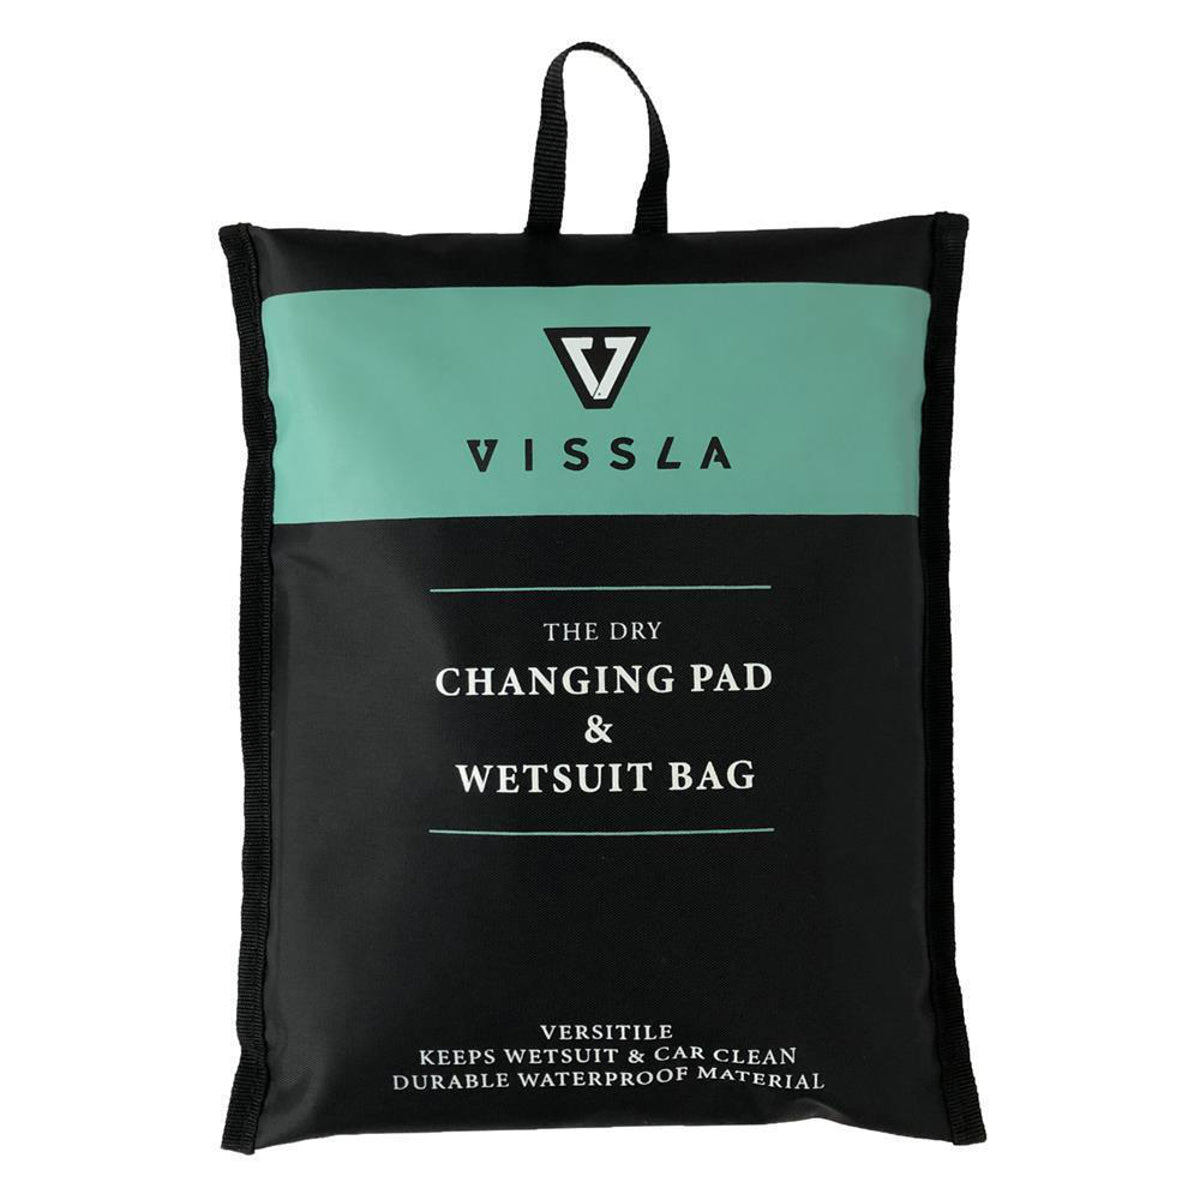 
                  
                    Change Mat/Bag - Vissla Changing Pad
                  
                